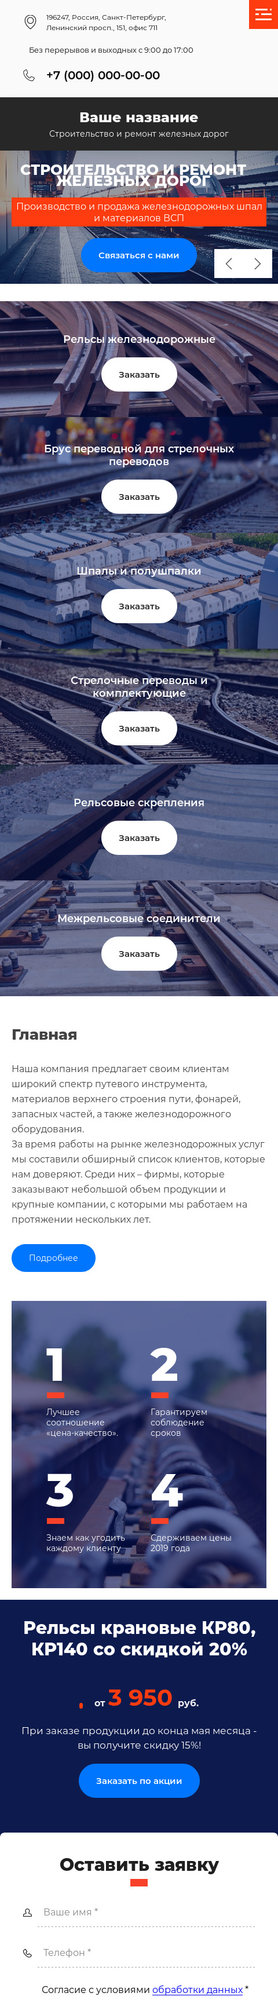 Готовый Сайт-Бизнес № 2943666 - Строительство и ремонт железных дорог (Мобильная версия)